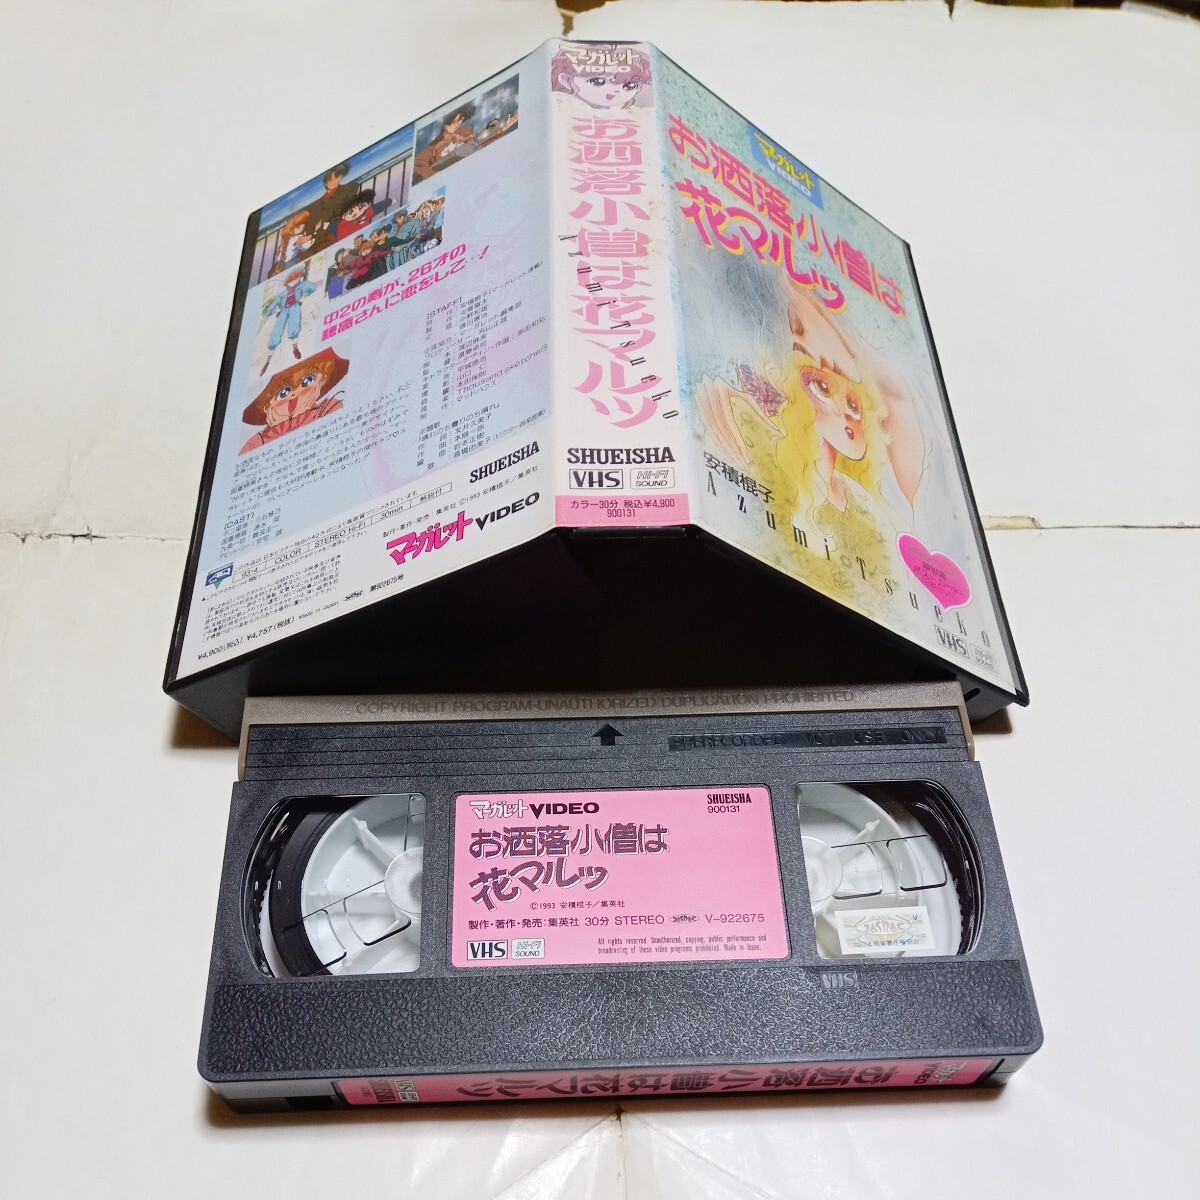 VHS видео OVA модный маленький .. цветок maru DVD не продажа произведение аниме оригинальное произведение * дешево сложенный .. выступление * три камень кото ., скорость вода ., дефект волна . один, дешево дом . др. 